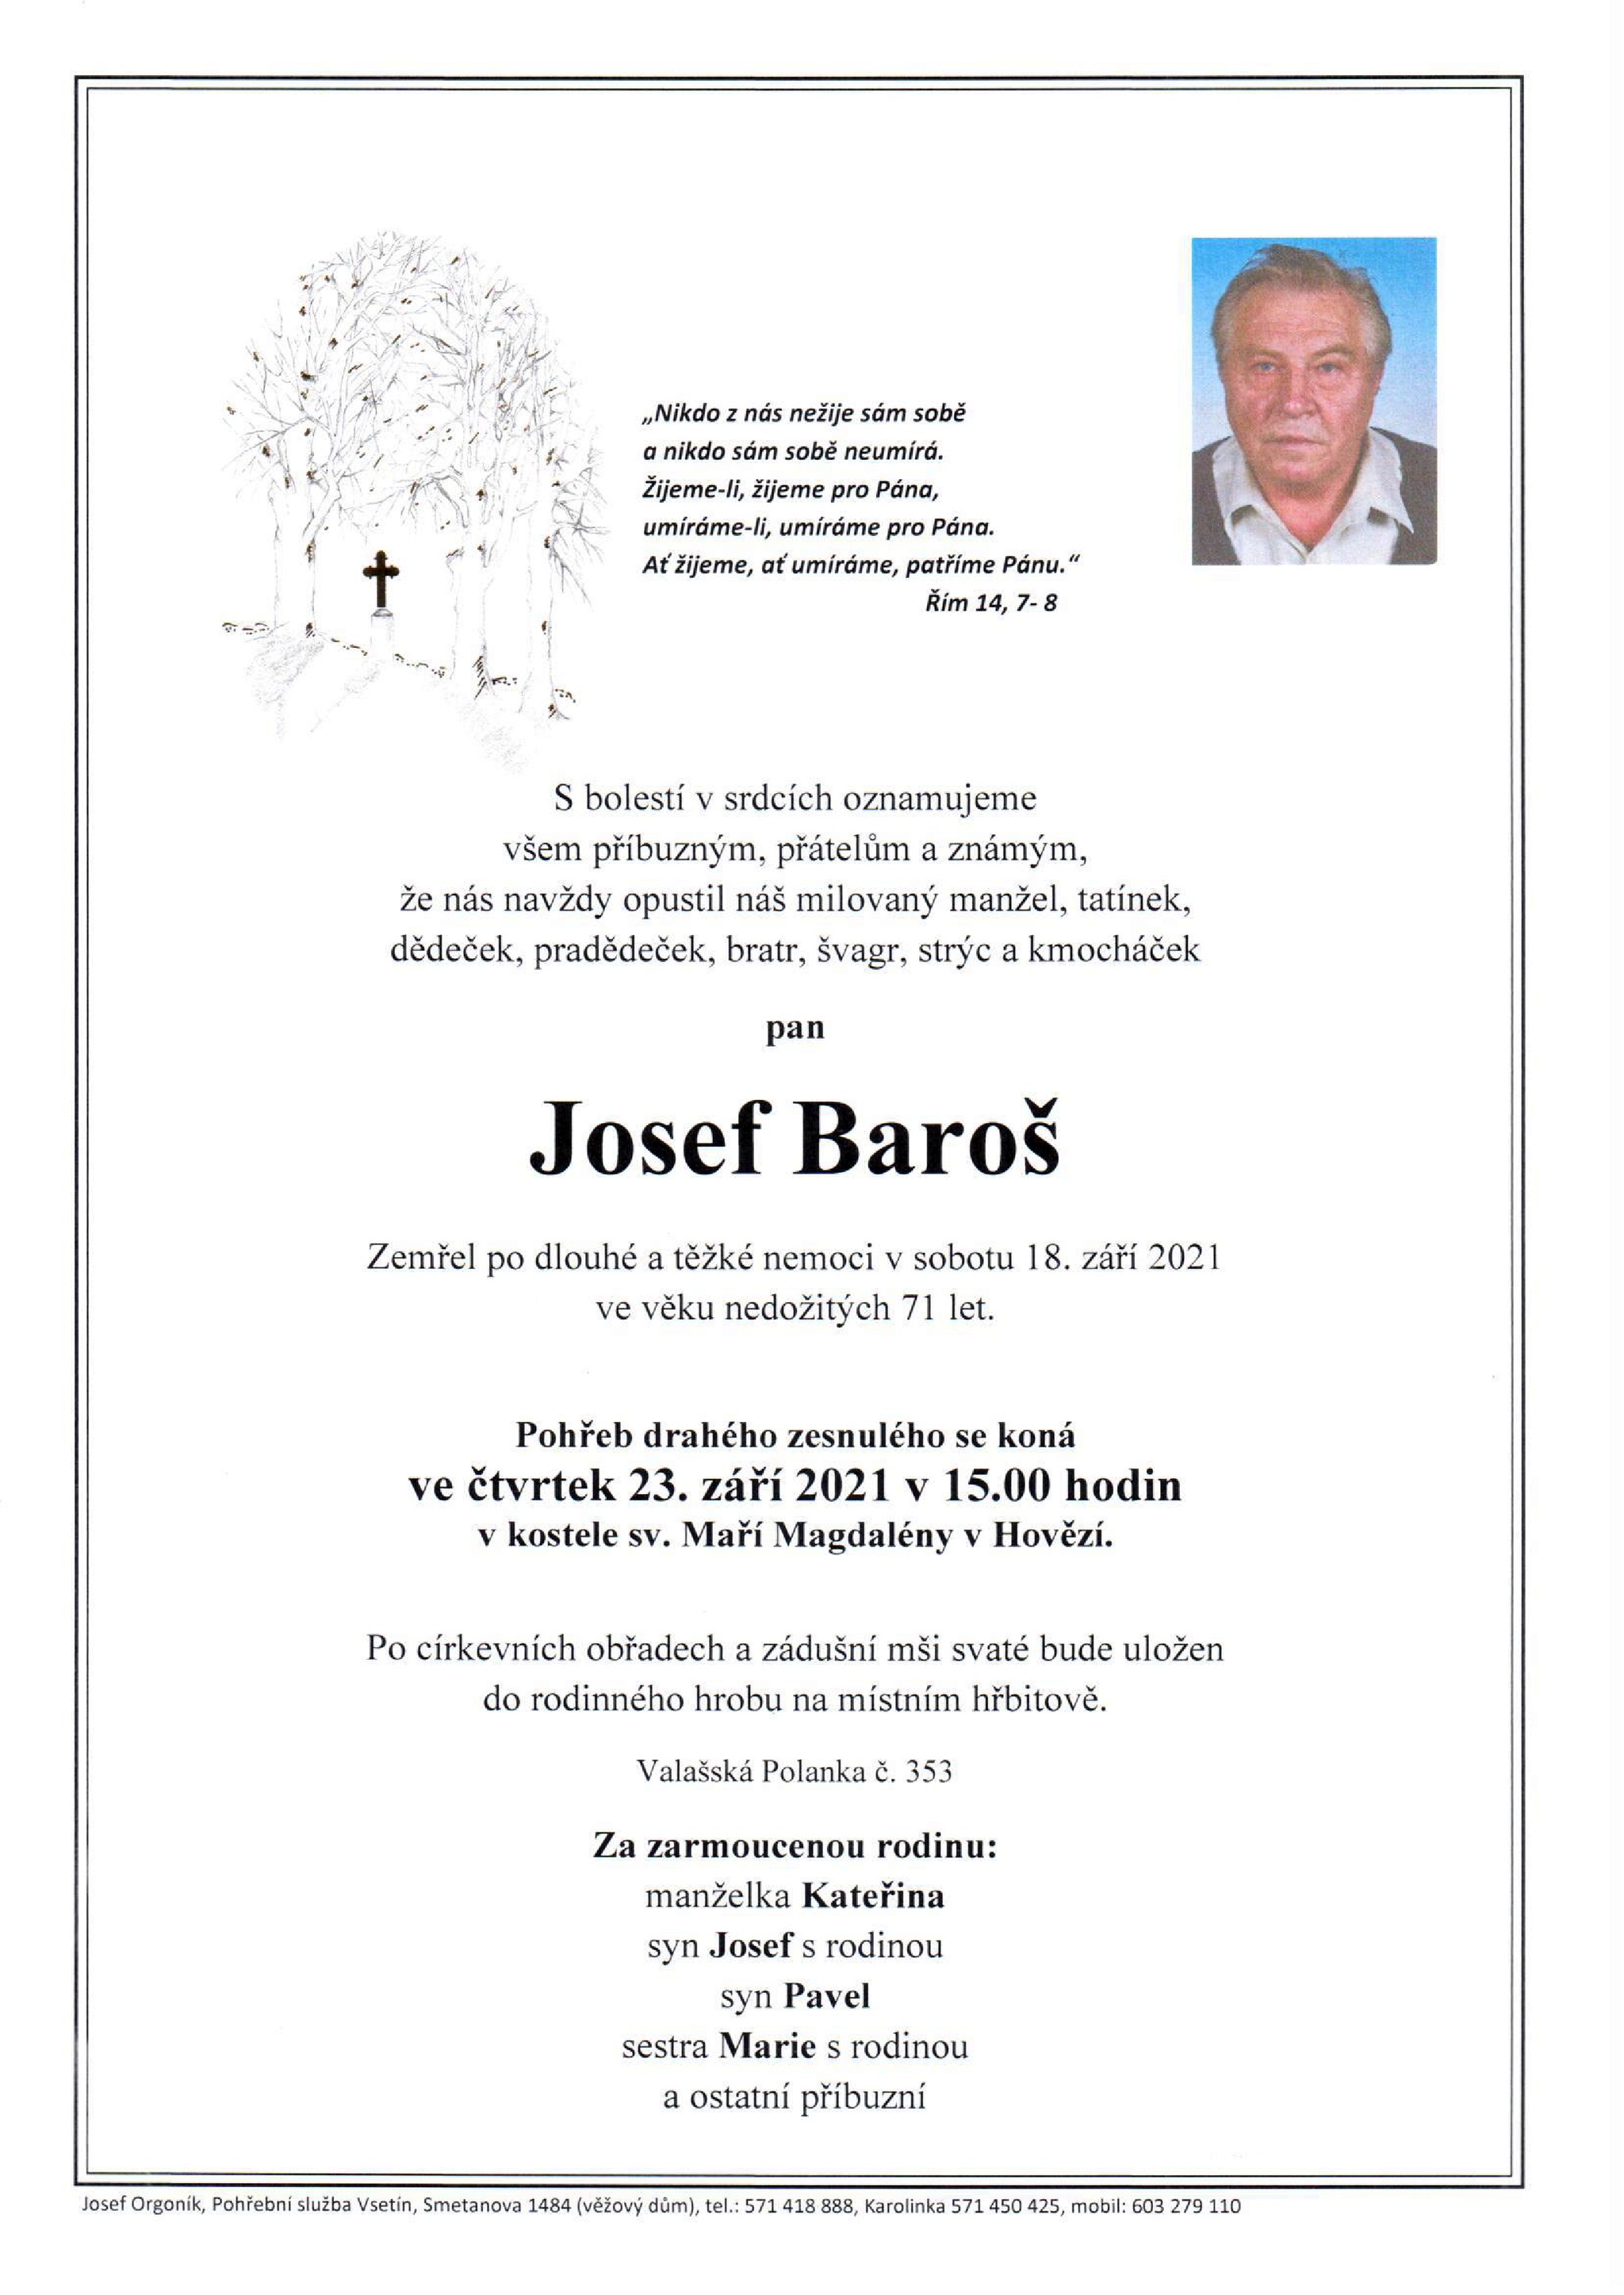 Josef Baroš